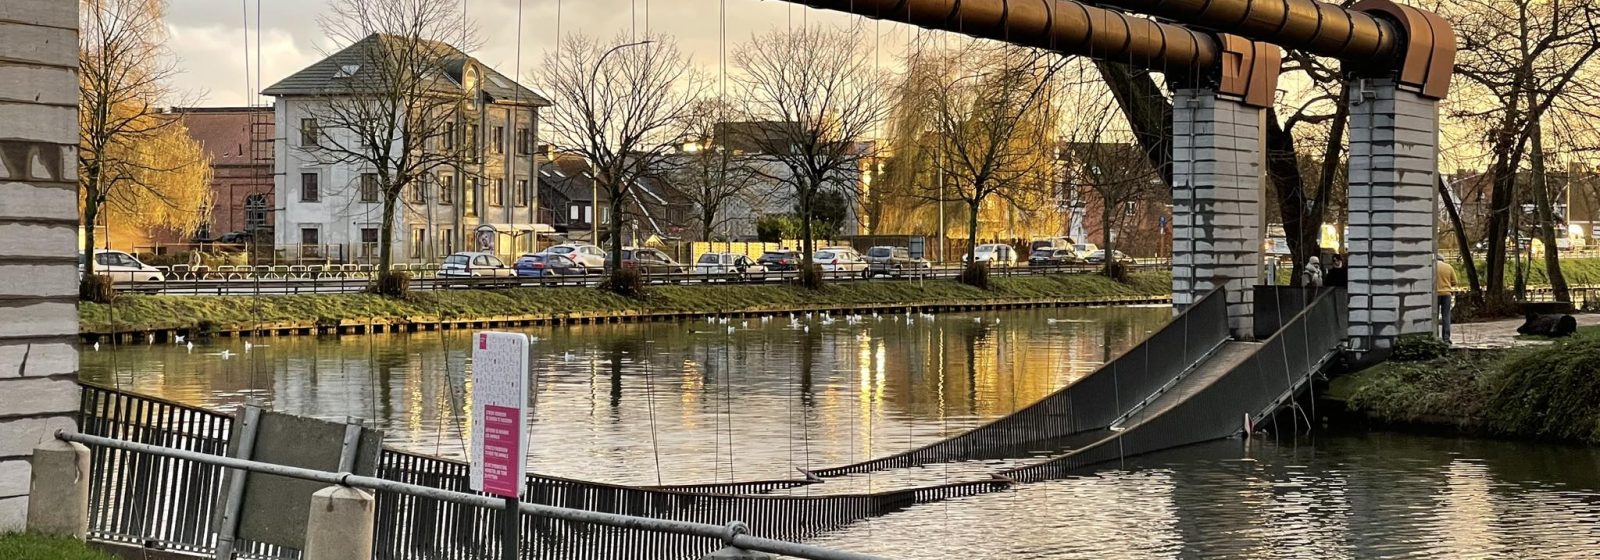 Conzettbrug in Brugge valt in het water.